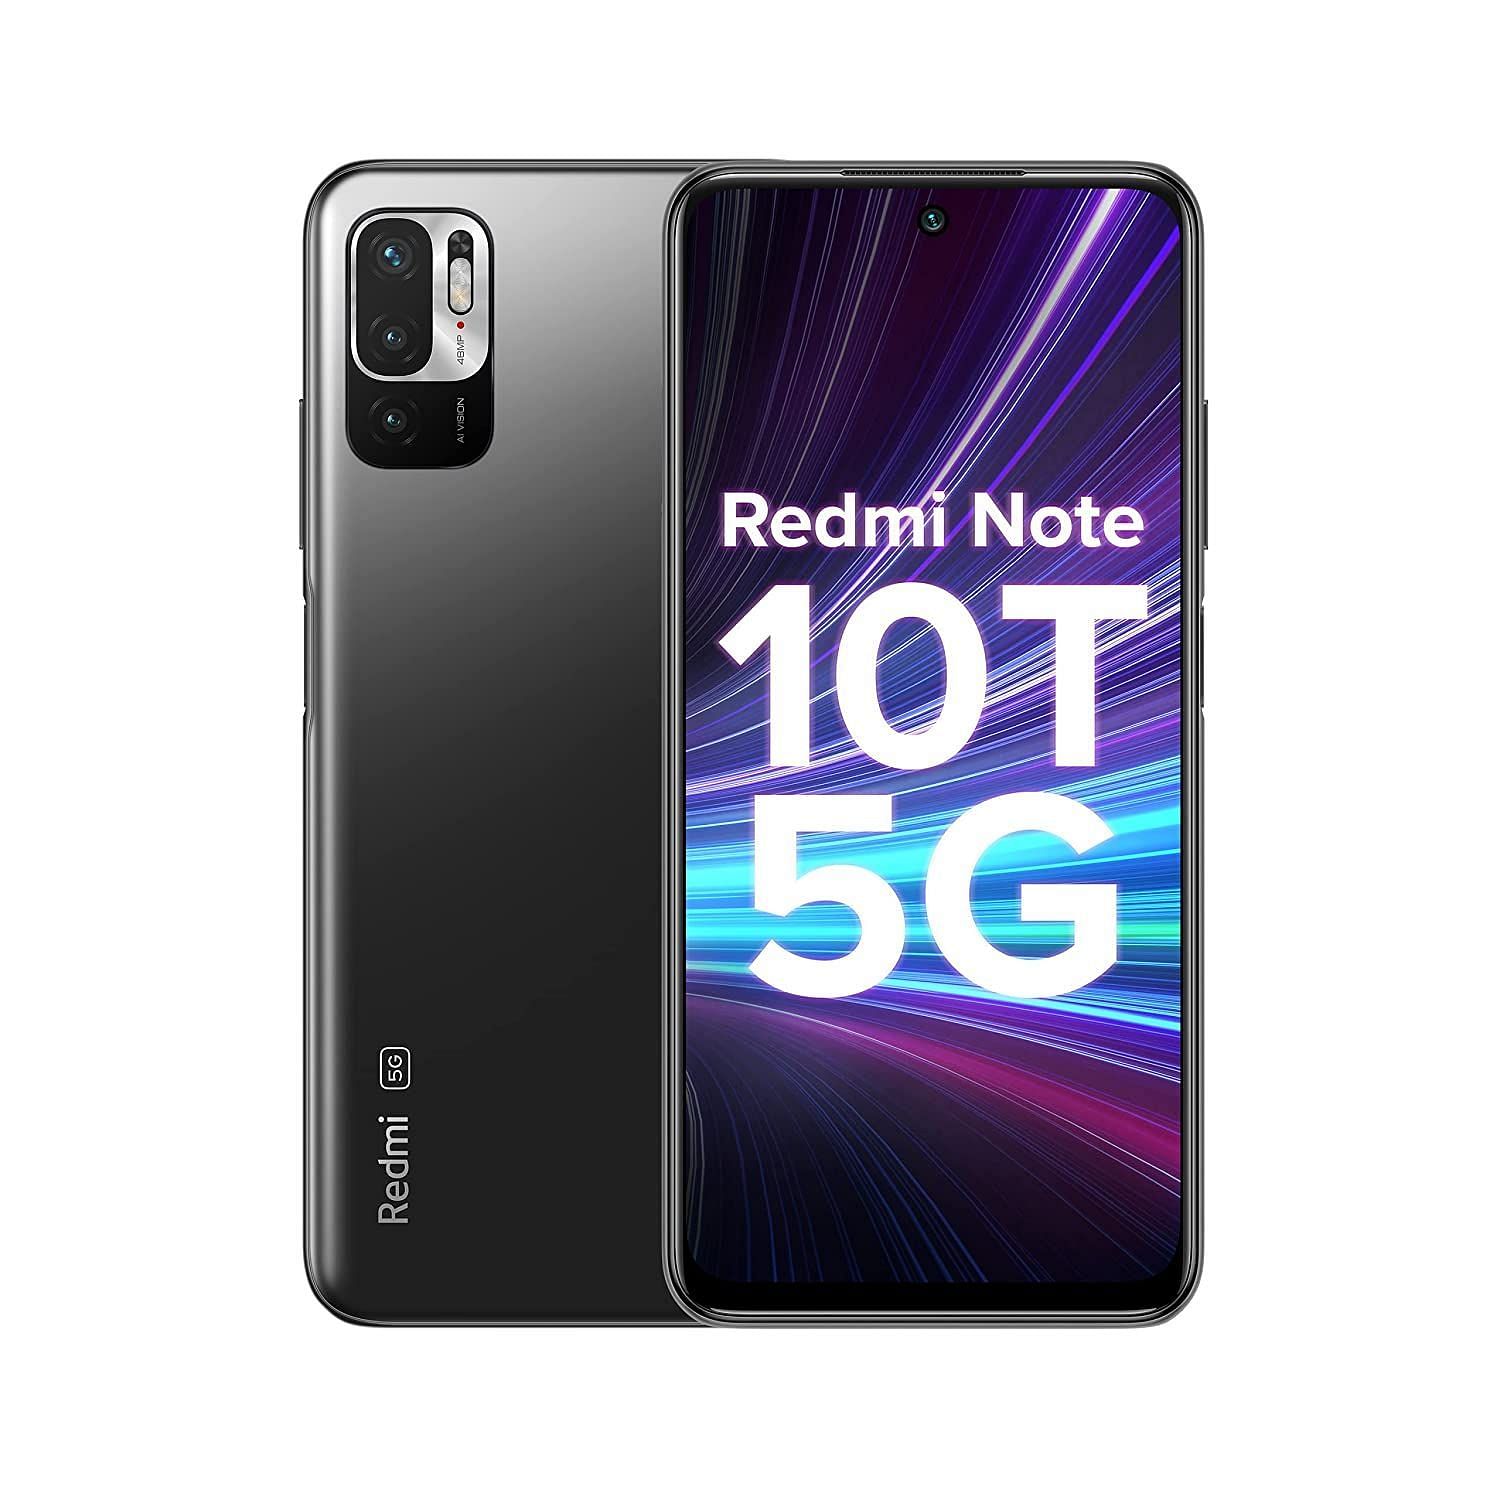 Redmi Note 10T 5G (Image via Amazon)